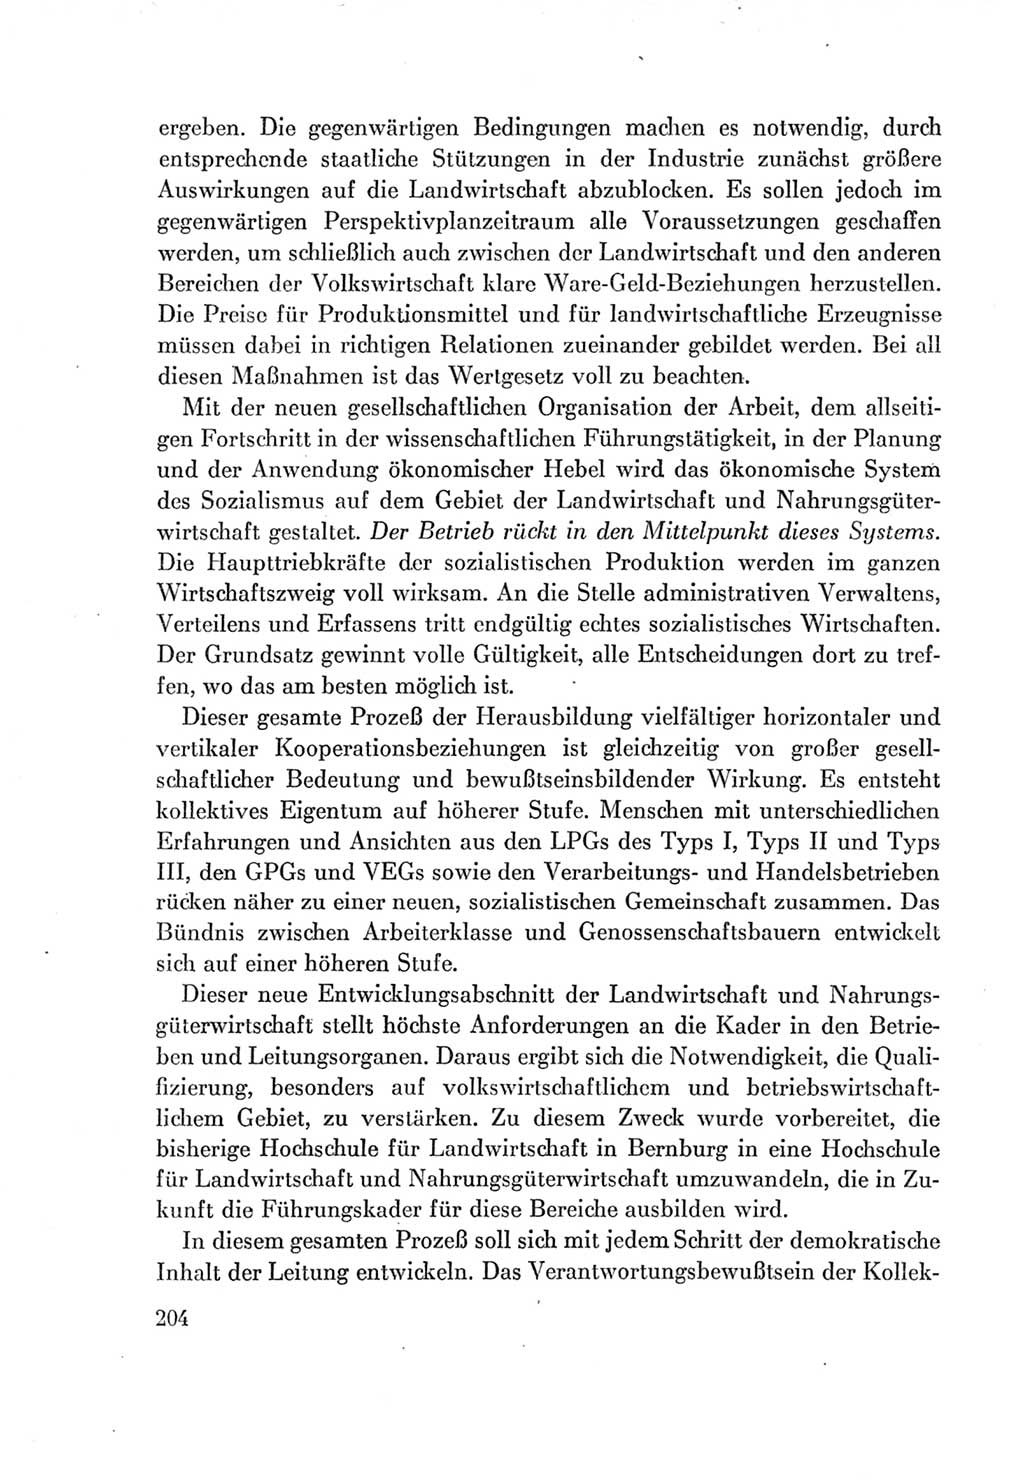 Protokoll der Verhandlungen des Ⅶ. Parteitages der Sozialistischen Einheitspartei Deutschlands (SED) [Deutsche Demokratische Republik (DDR)] 1967, Band Ⅰ, Seite 204 (Prot. Verh. Ⅶ. PT SED DDR 1967, Bd. Ⅰ, S. 204)